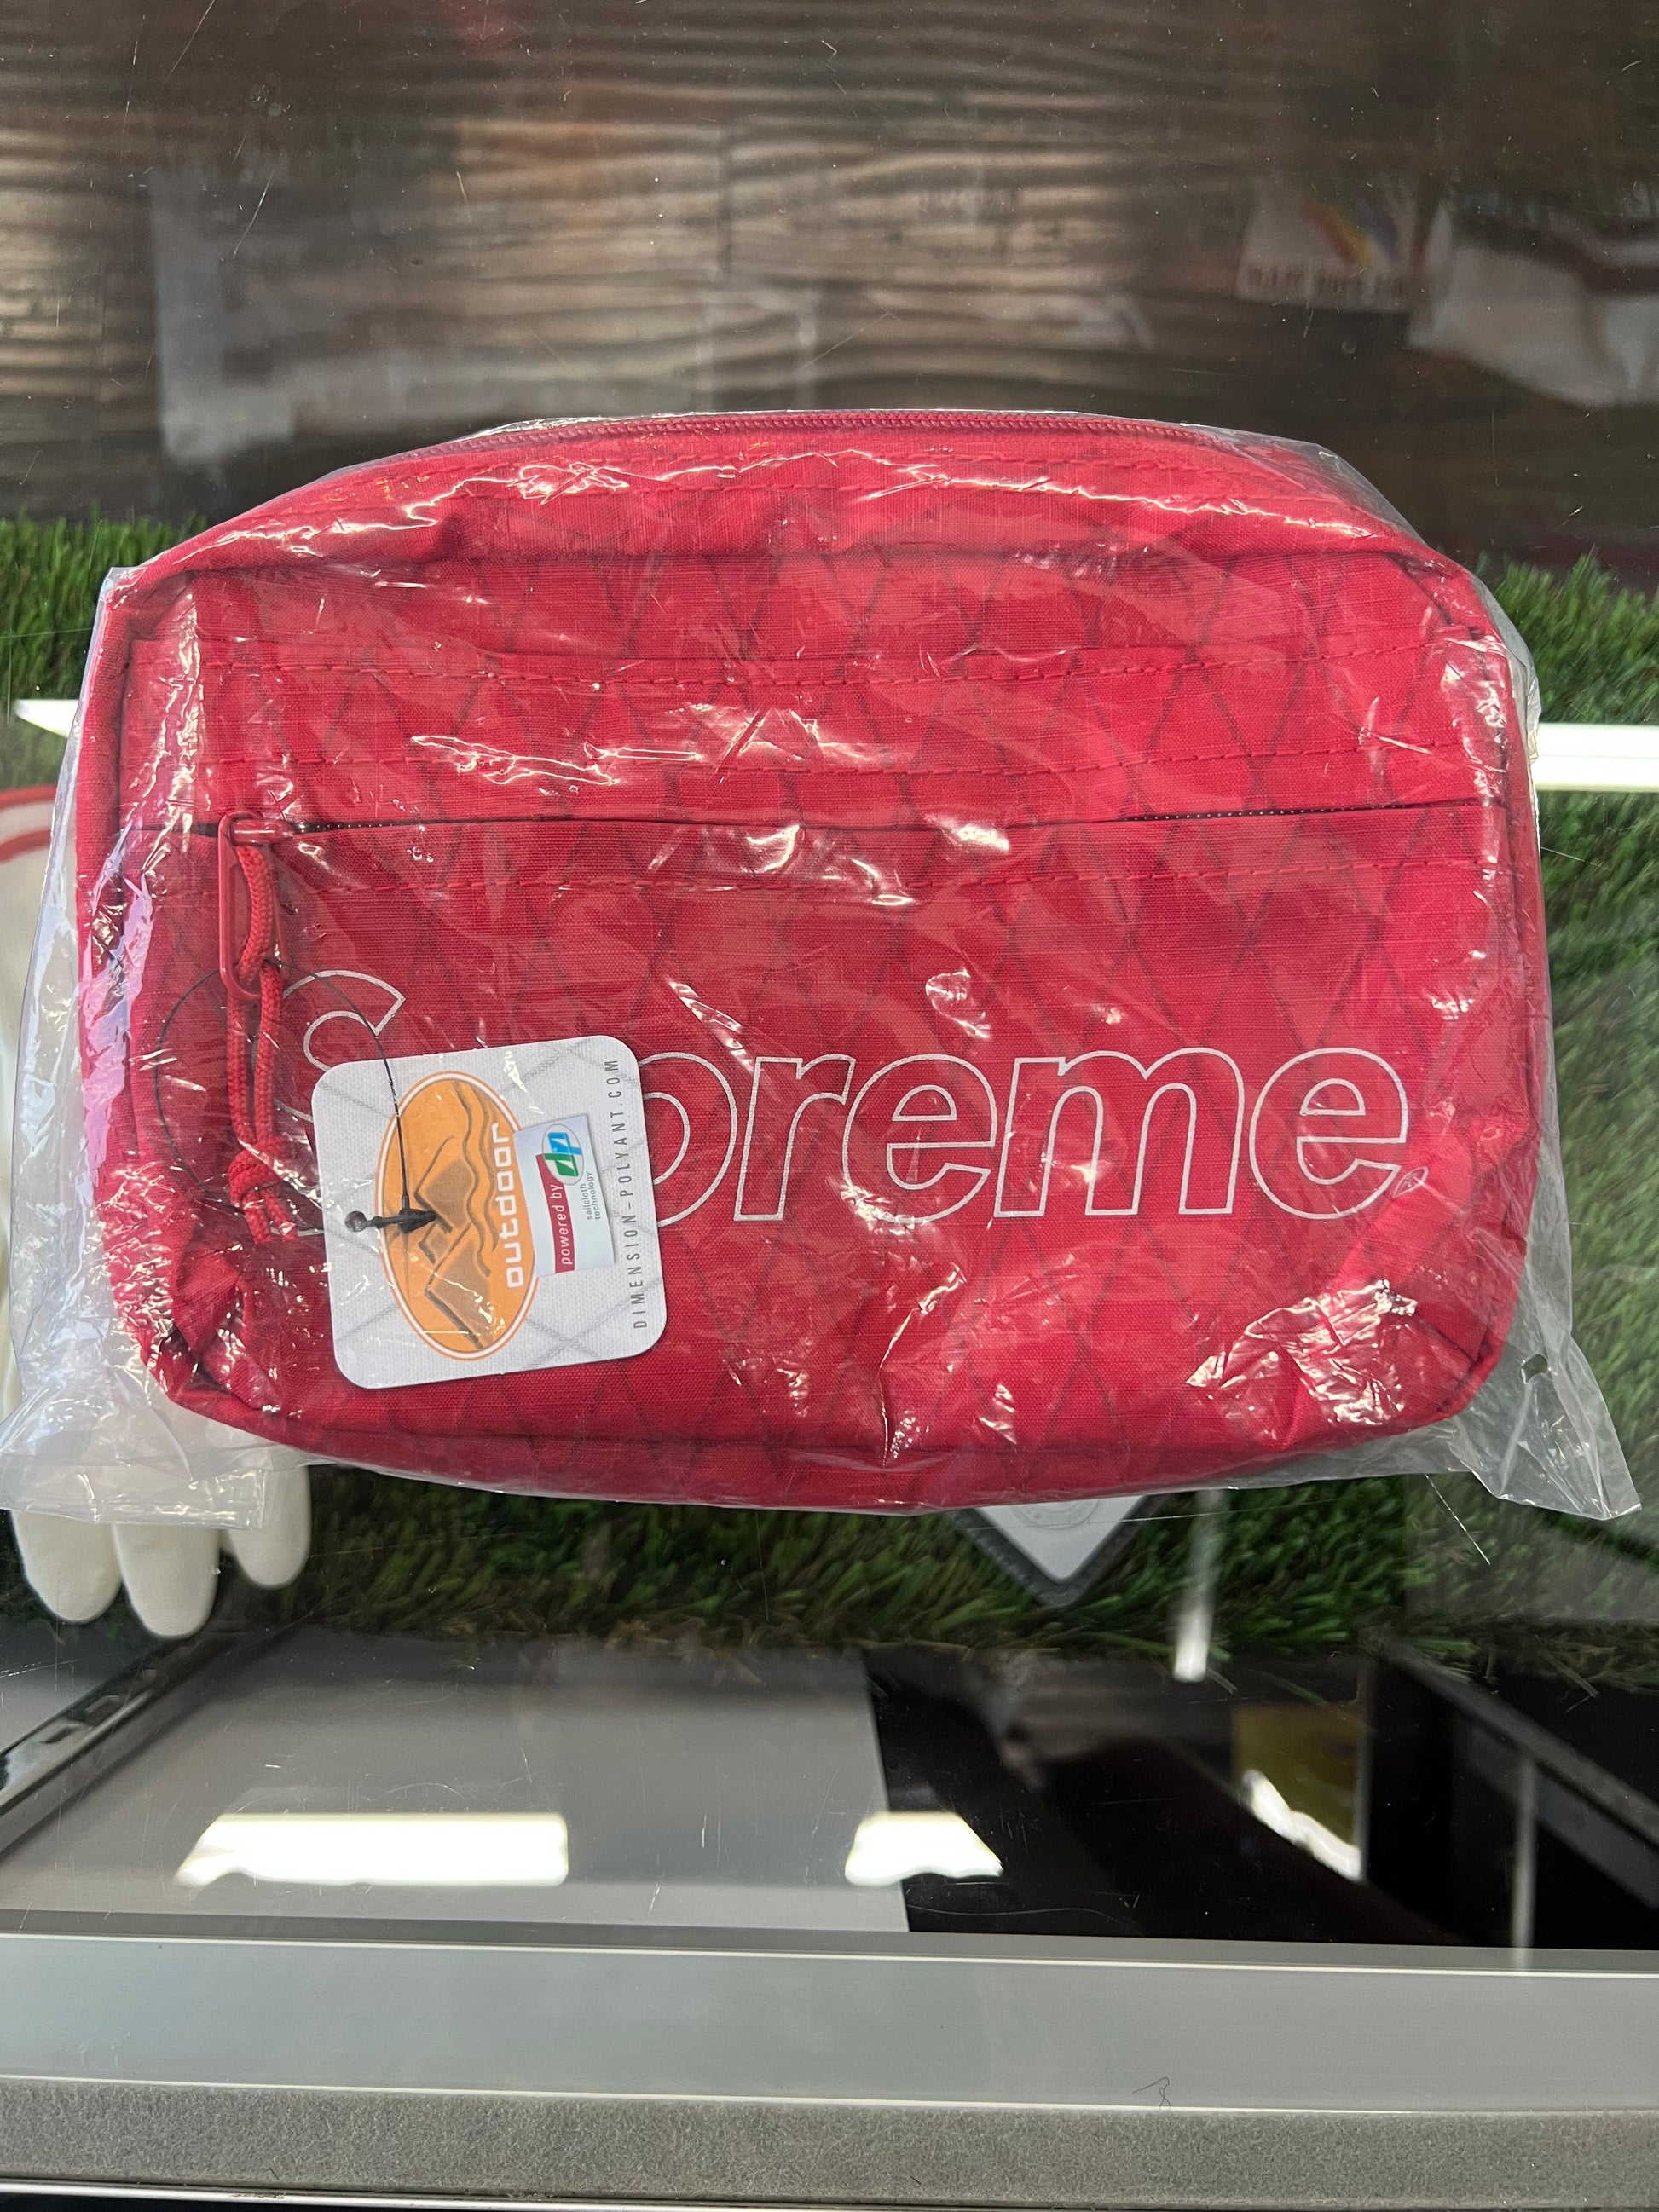 Supreme Shoulder Bag Red (FW18)